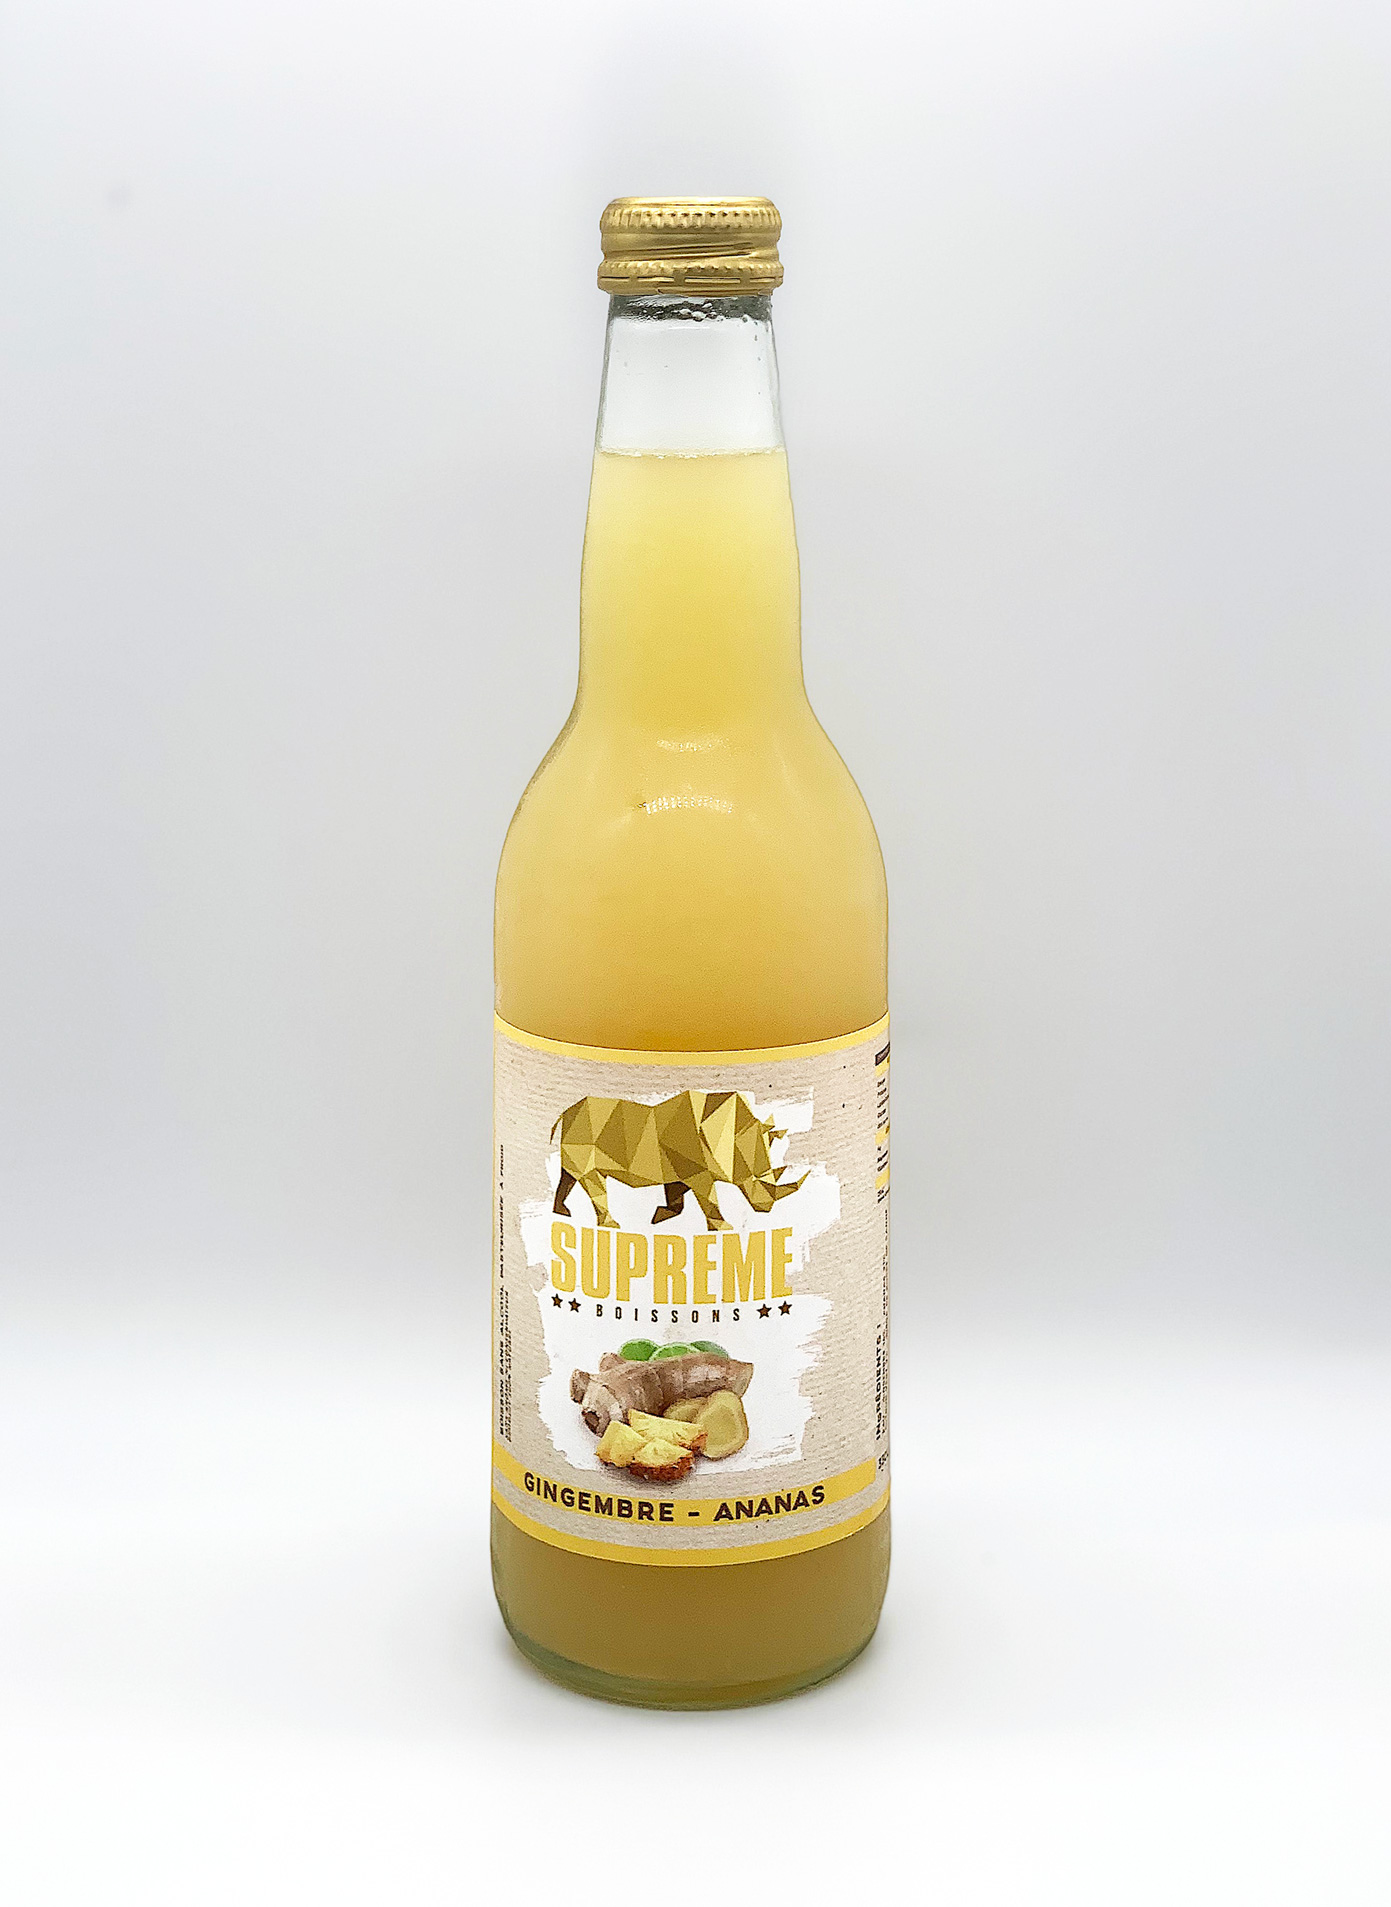 Suprême boisson - Gingembre/Ananas (33cl) - Le Pique-Nique Du Bassin